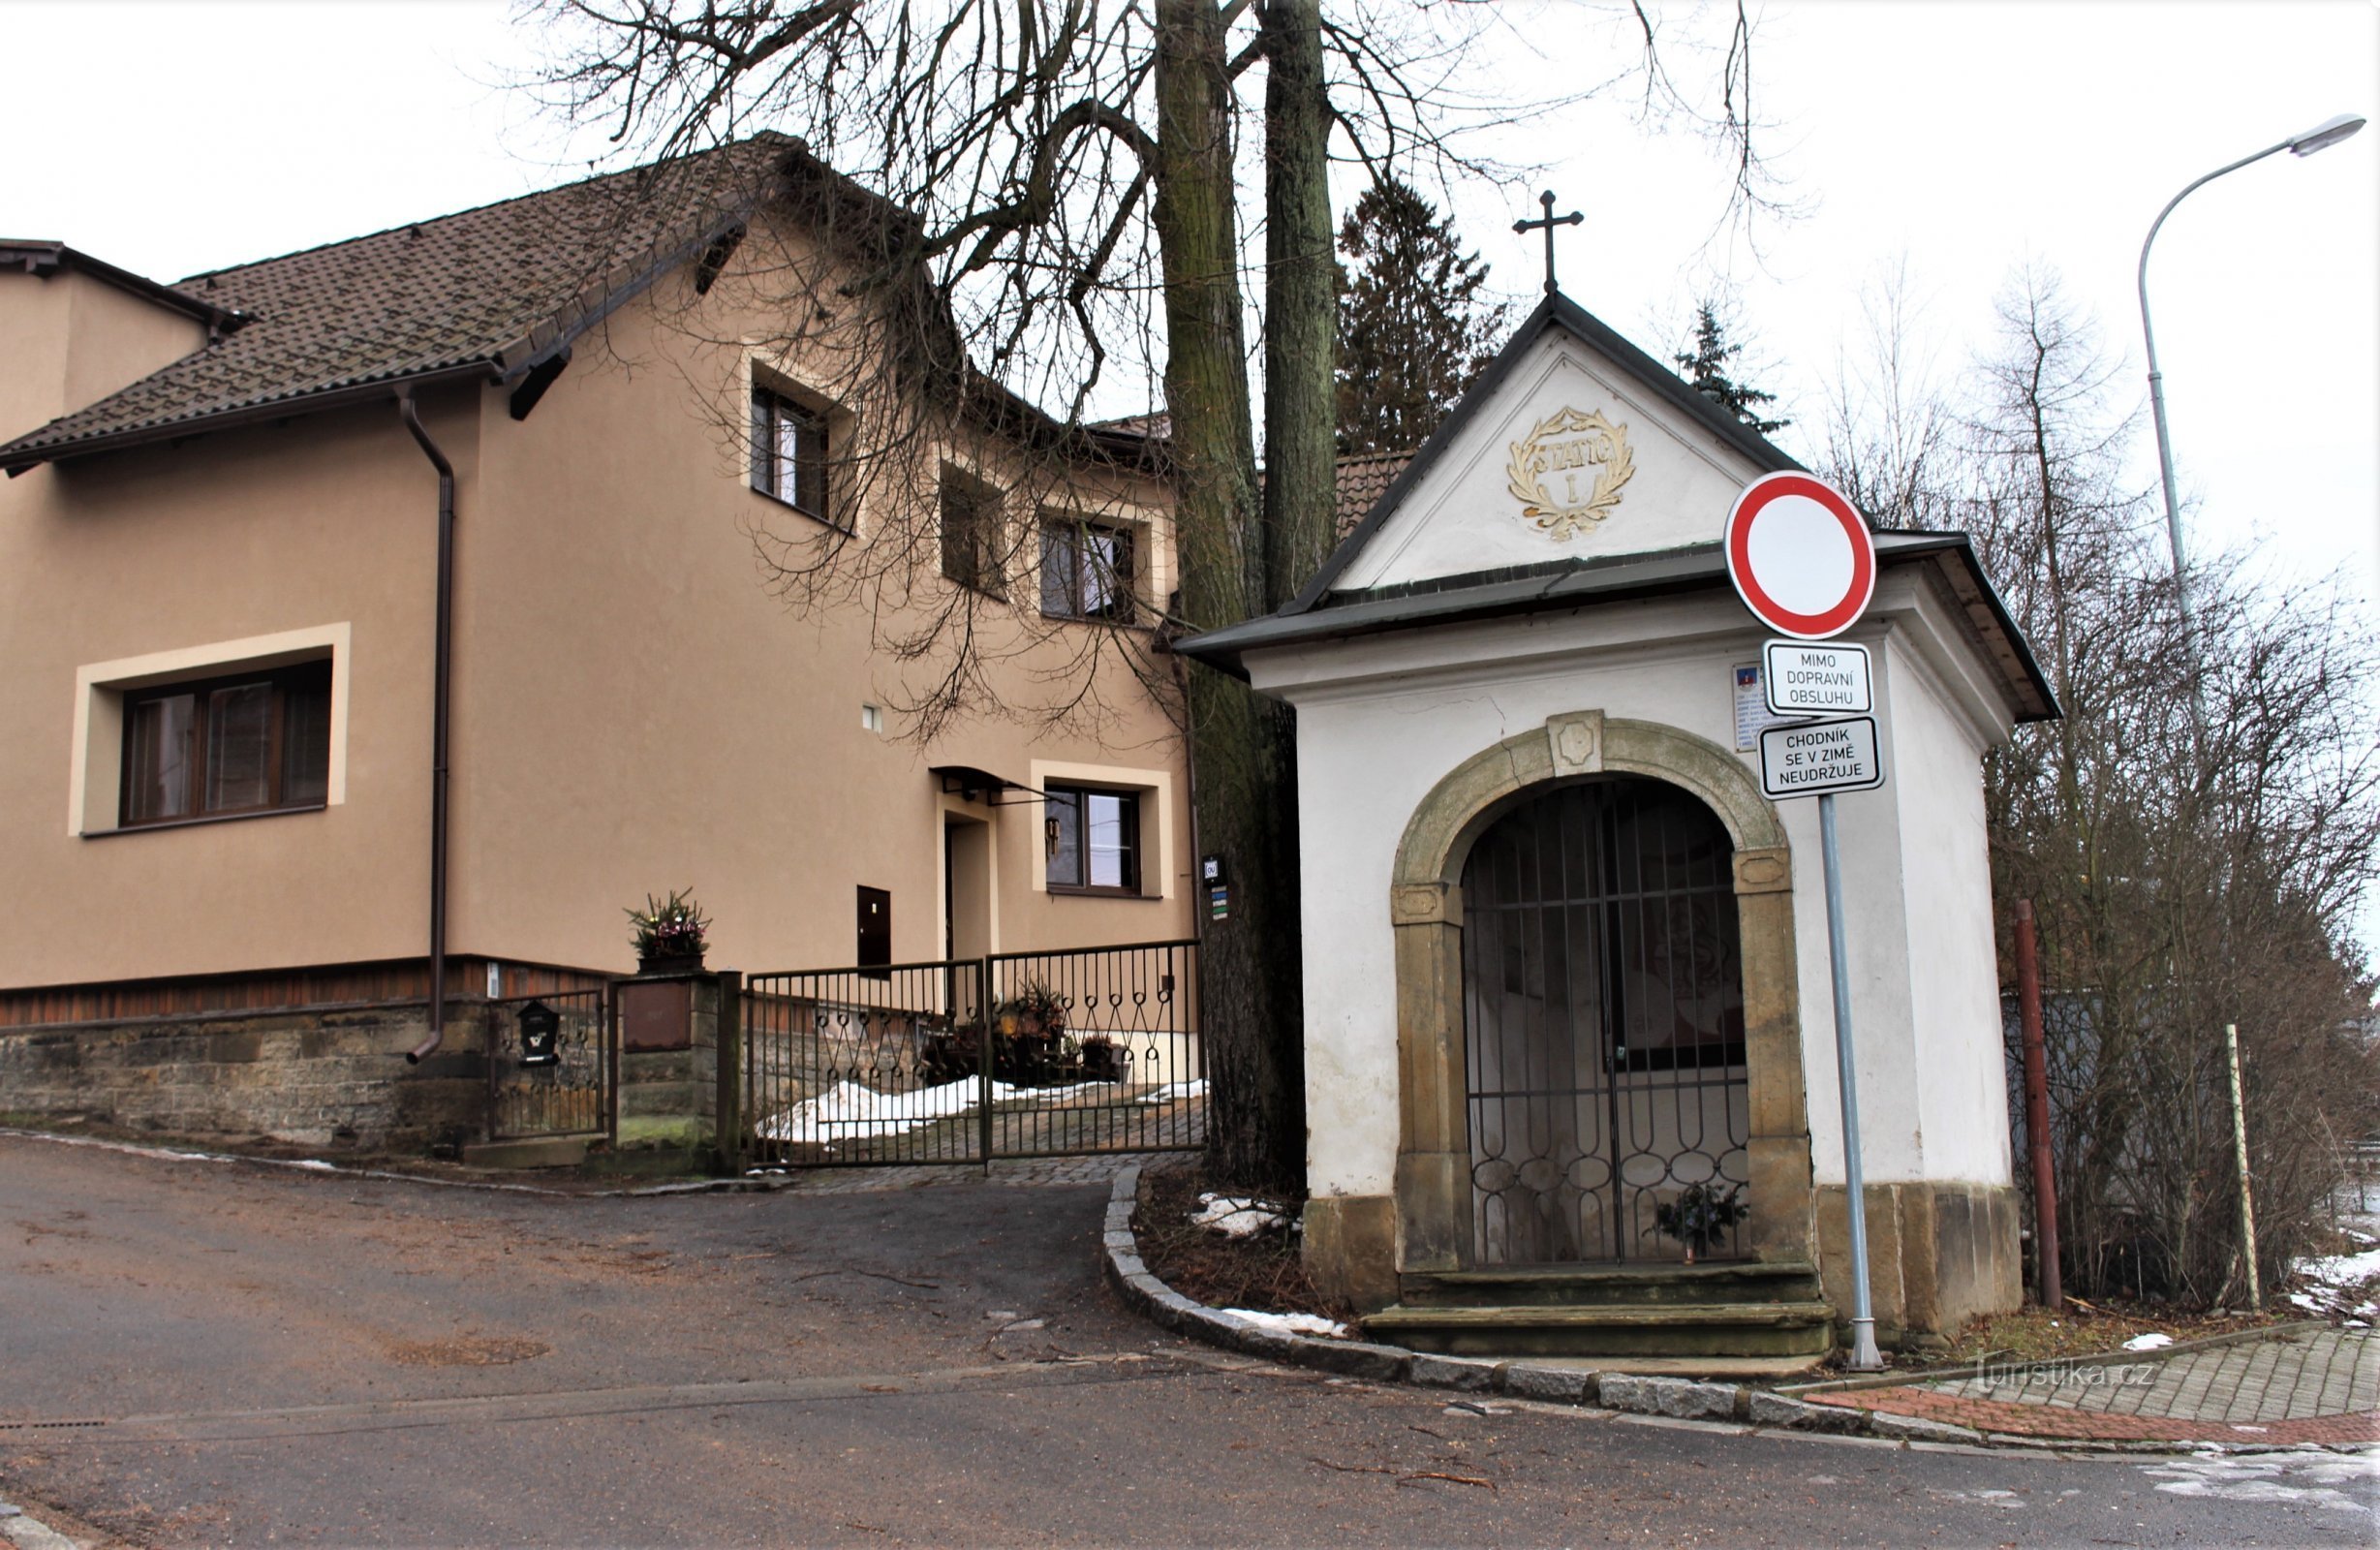 Nhà nguyện đầu tiên của Chặng Đàng Thánh Giá nằm ở đầu đường J. Štyrsy